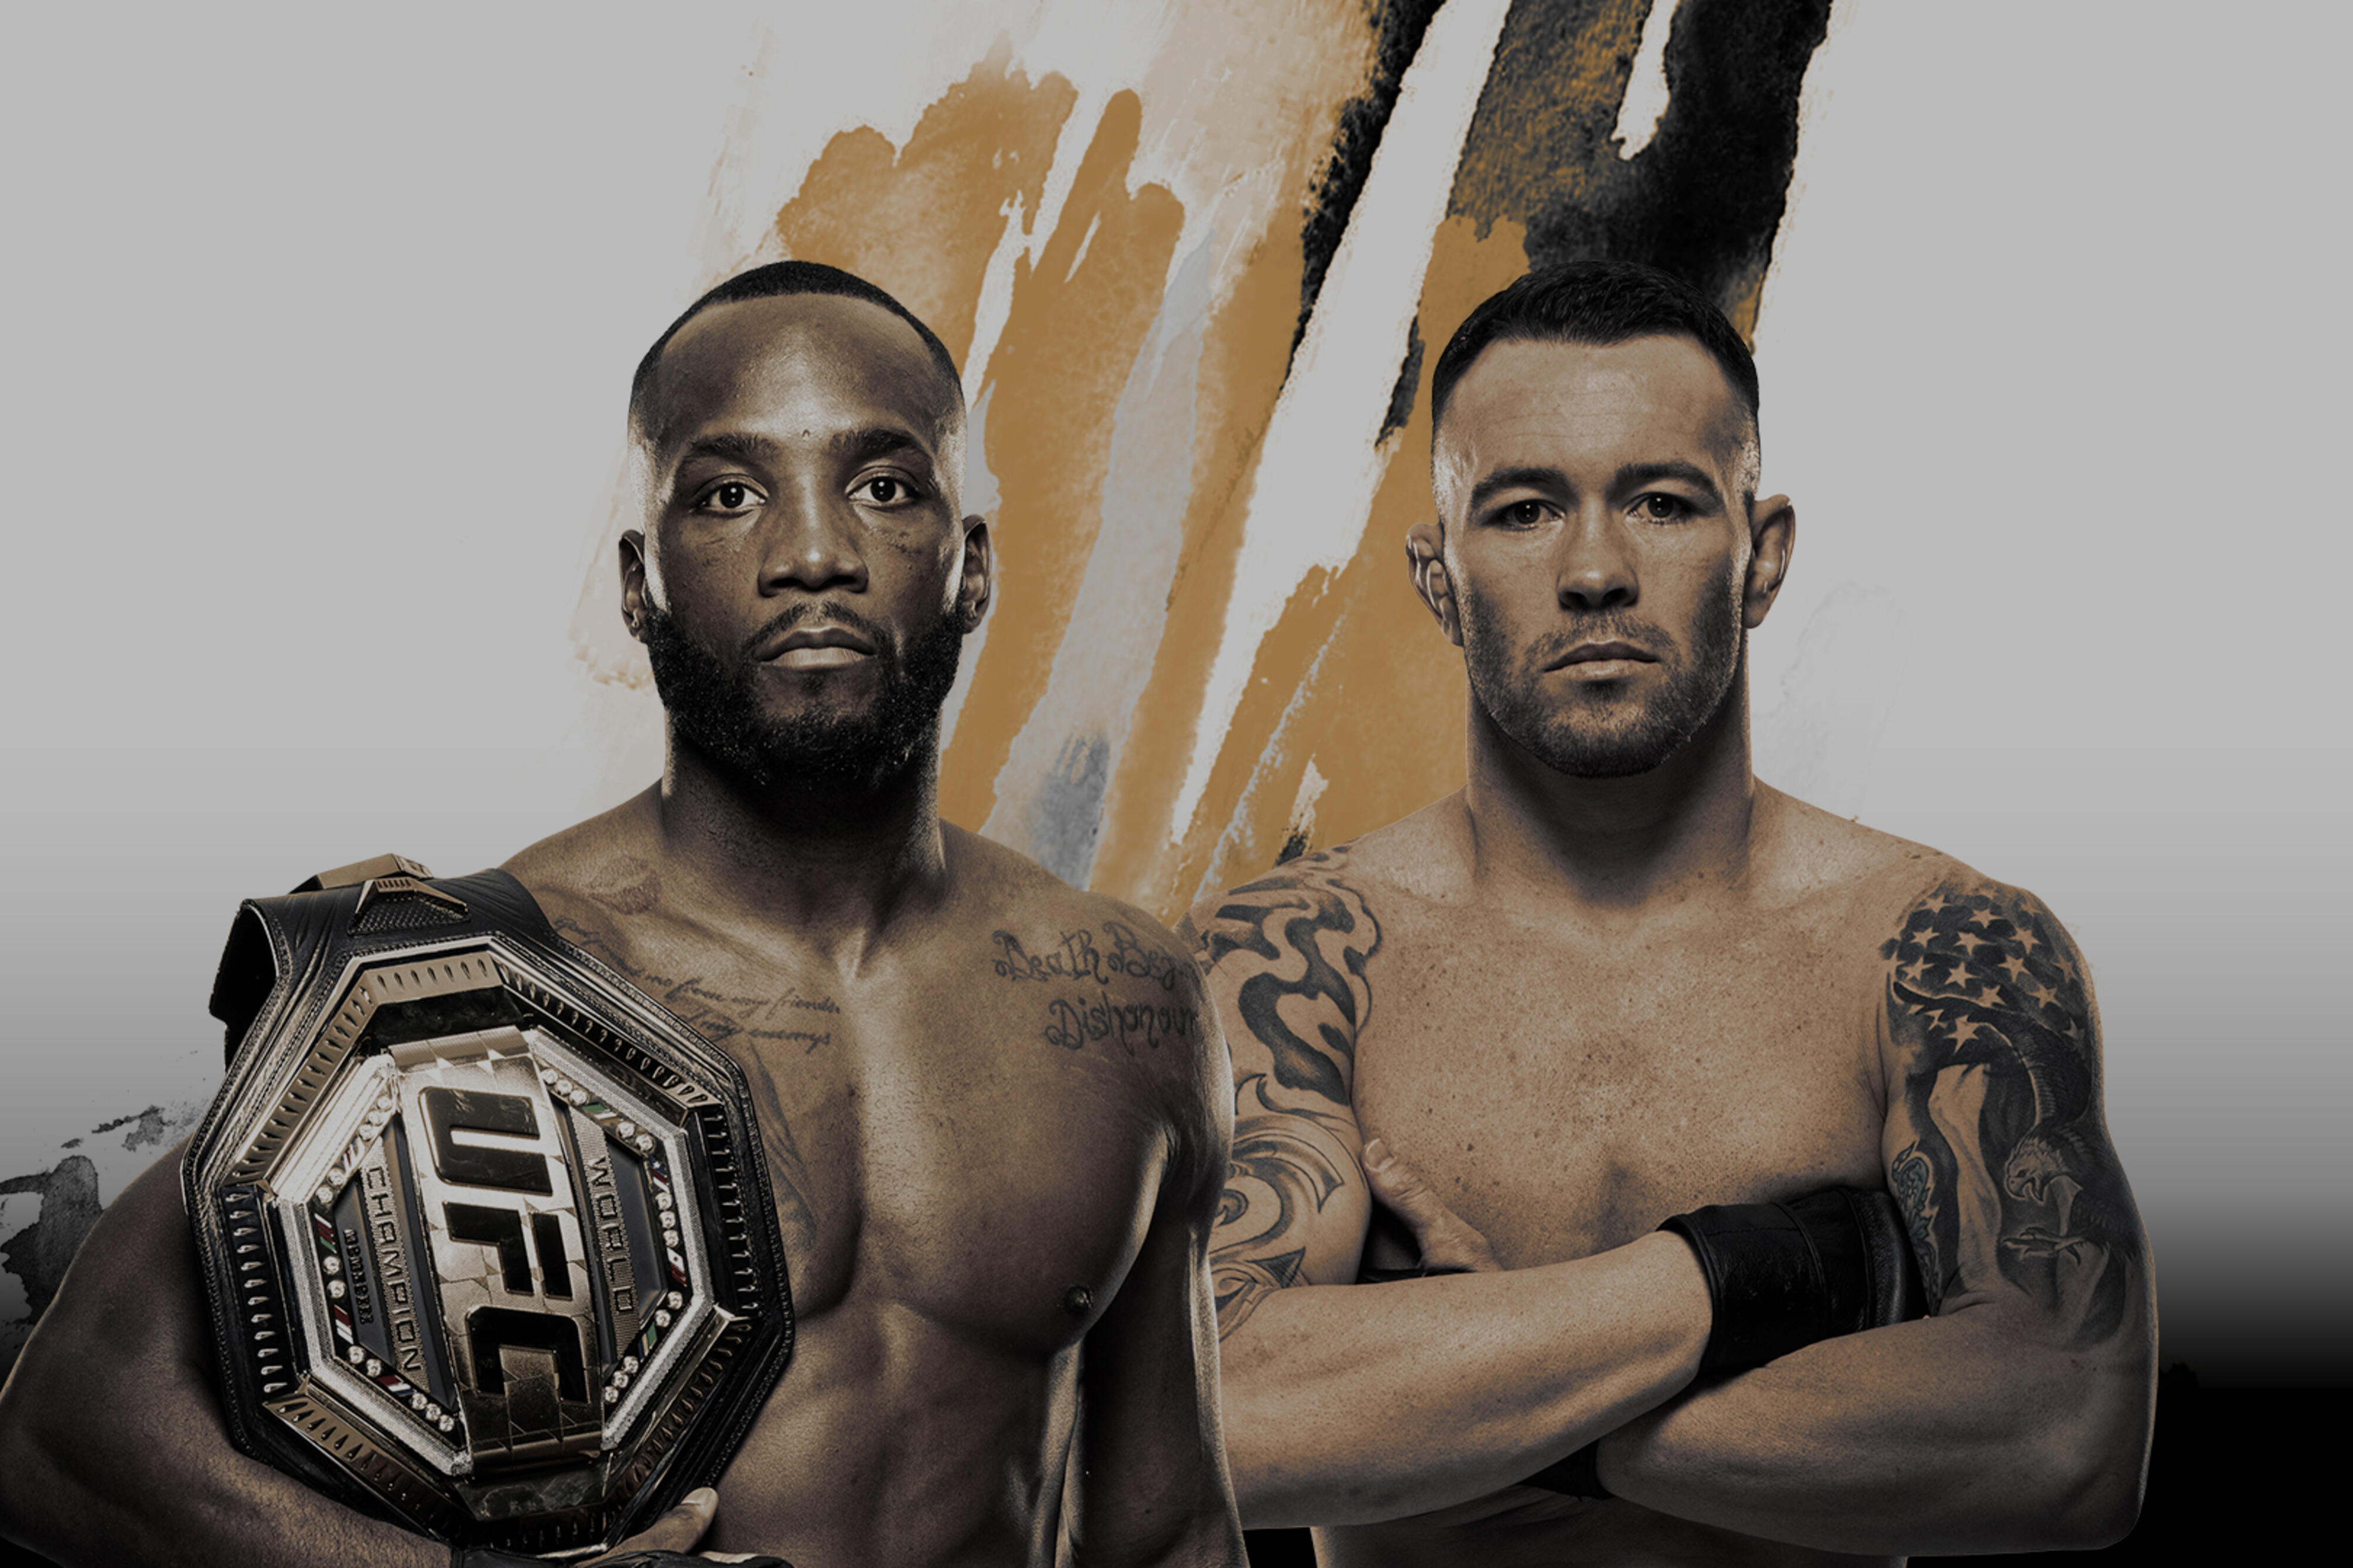 UFC 296 - Las Vegas - Poster et affiche